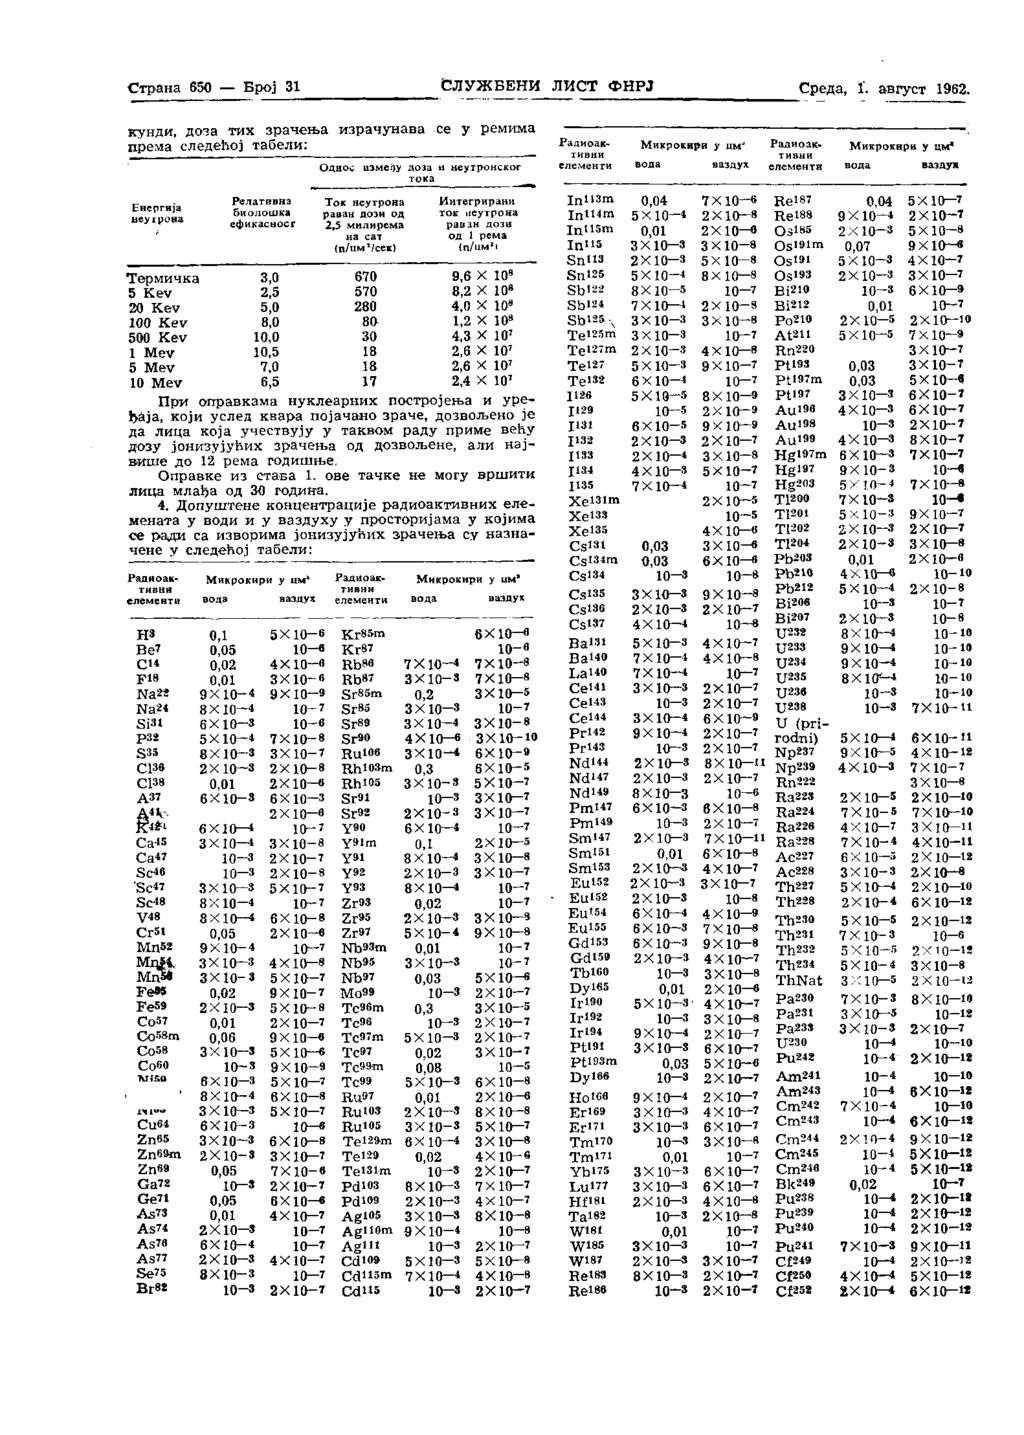 Страна 650 Број 31 Службени лист фнрј Среда, I. август 1962.